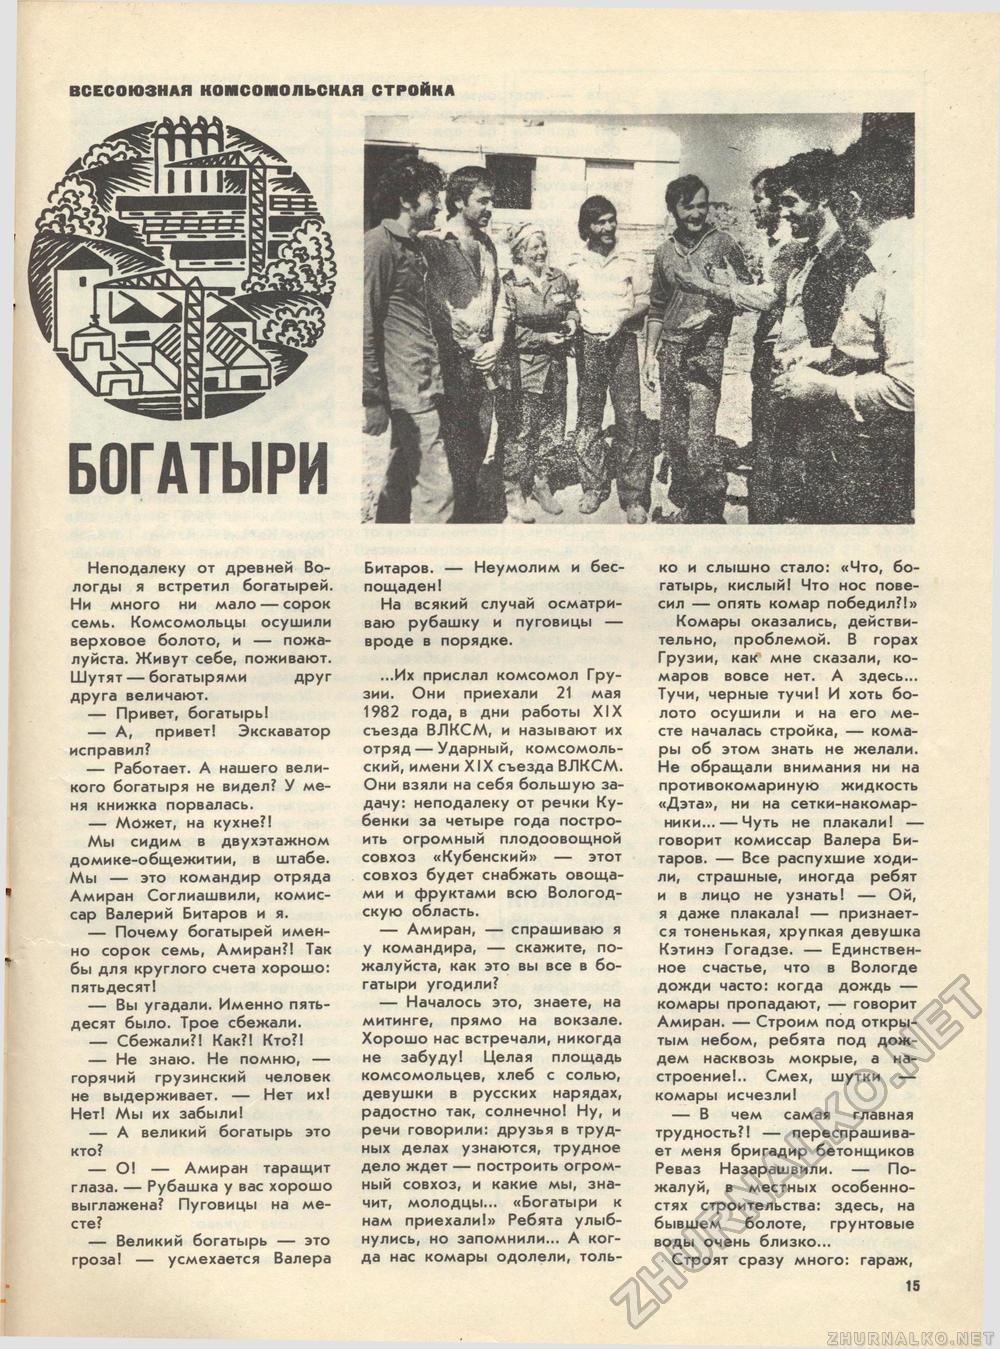  1983-10,  19